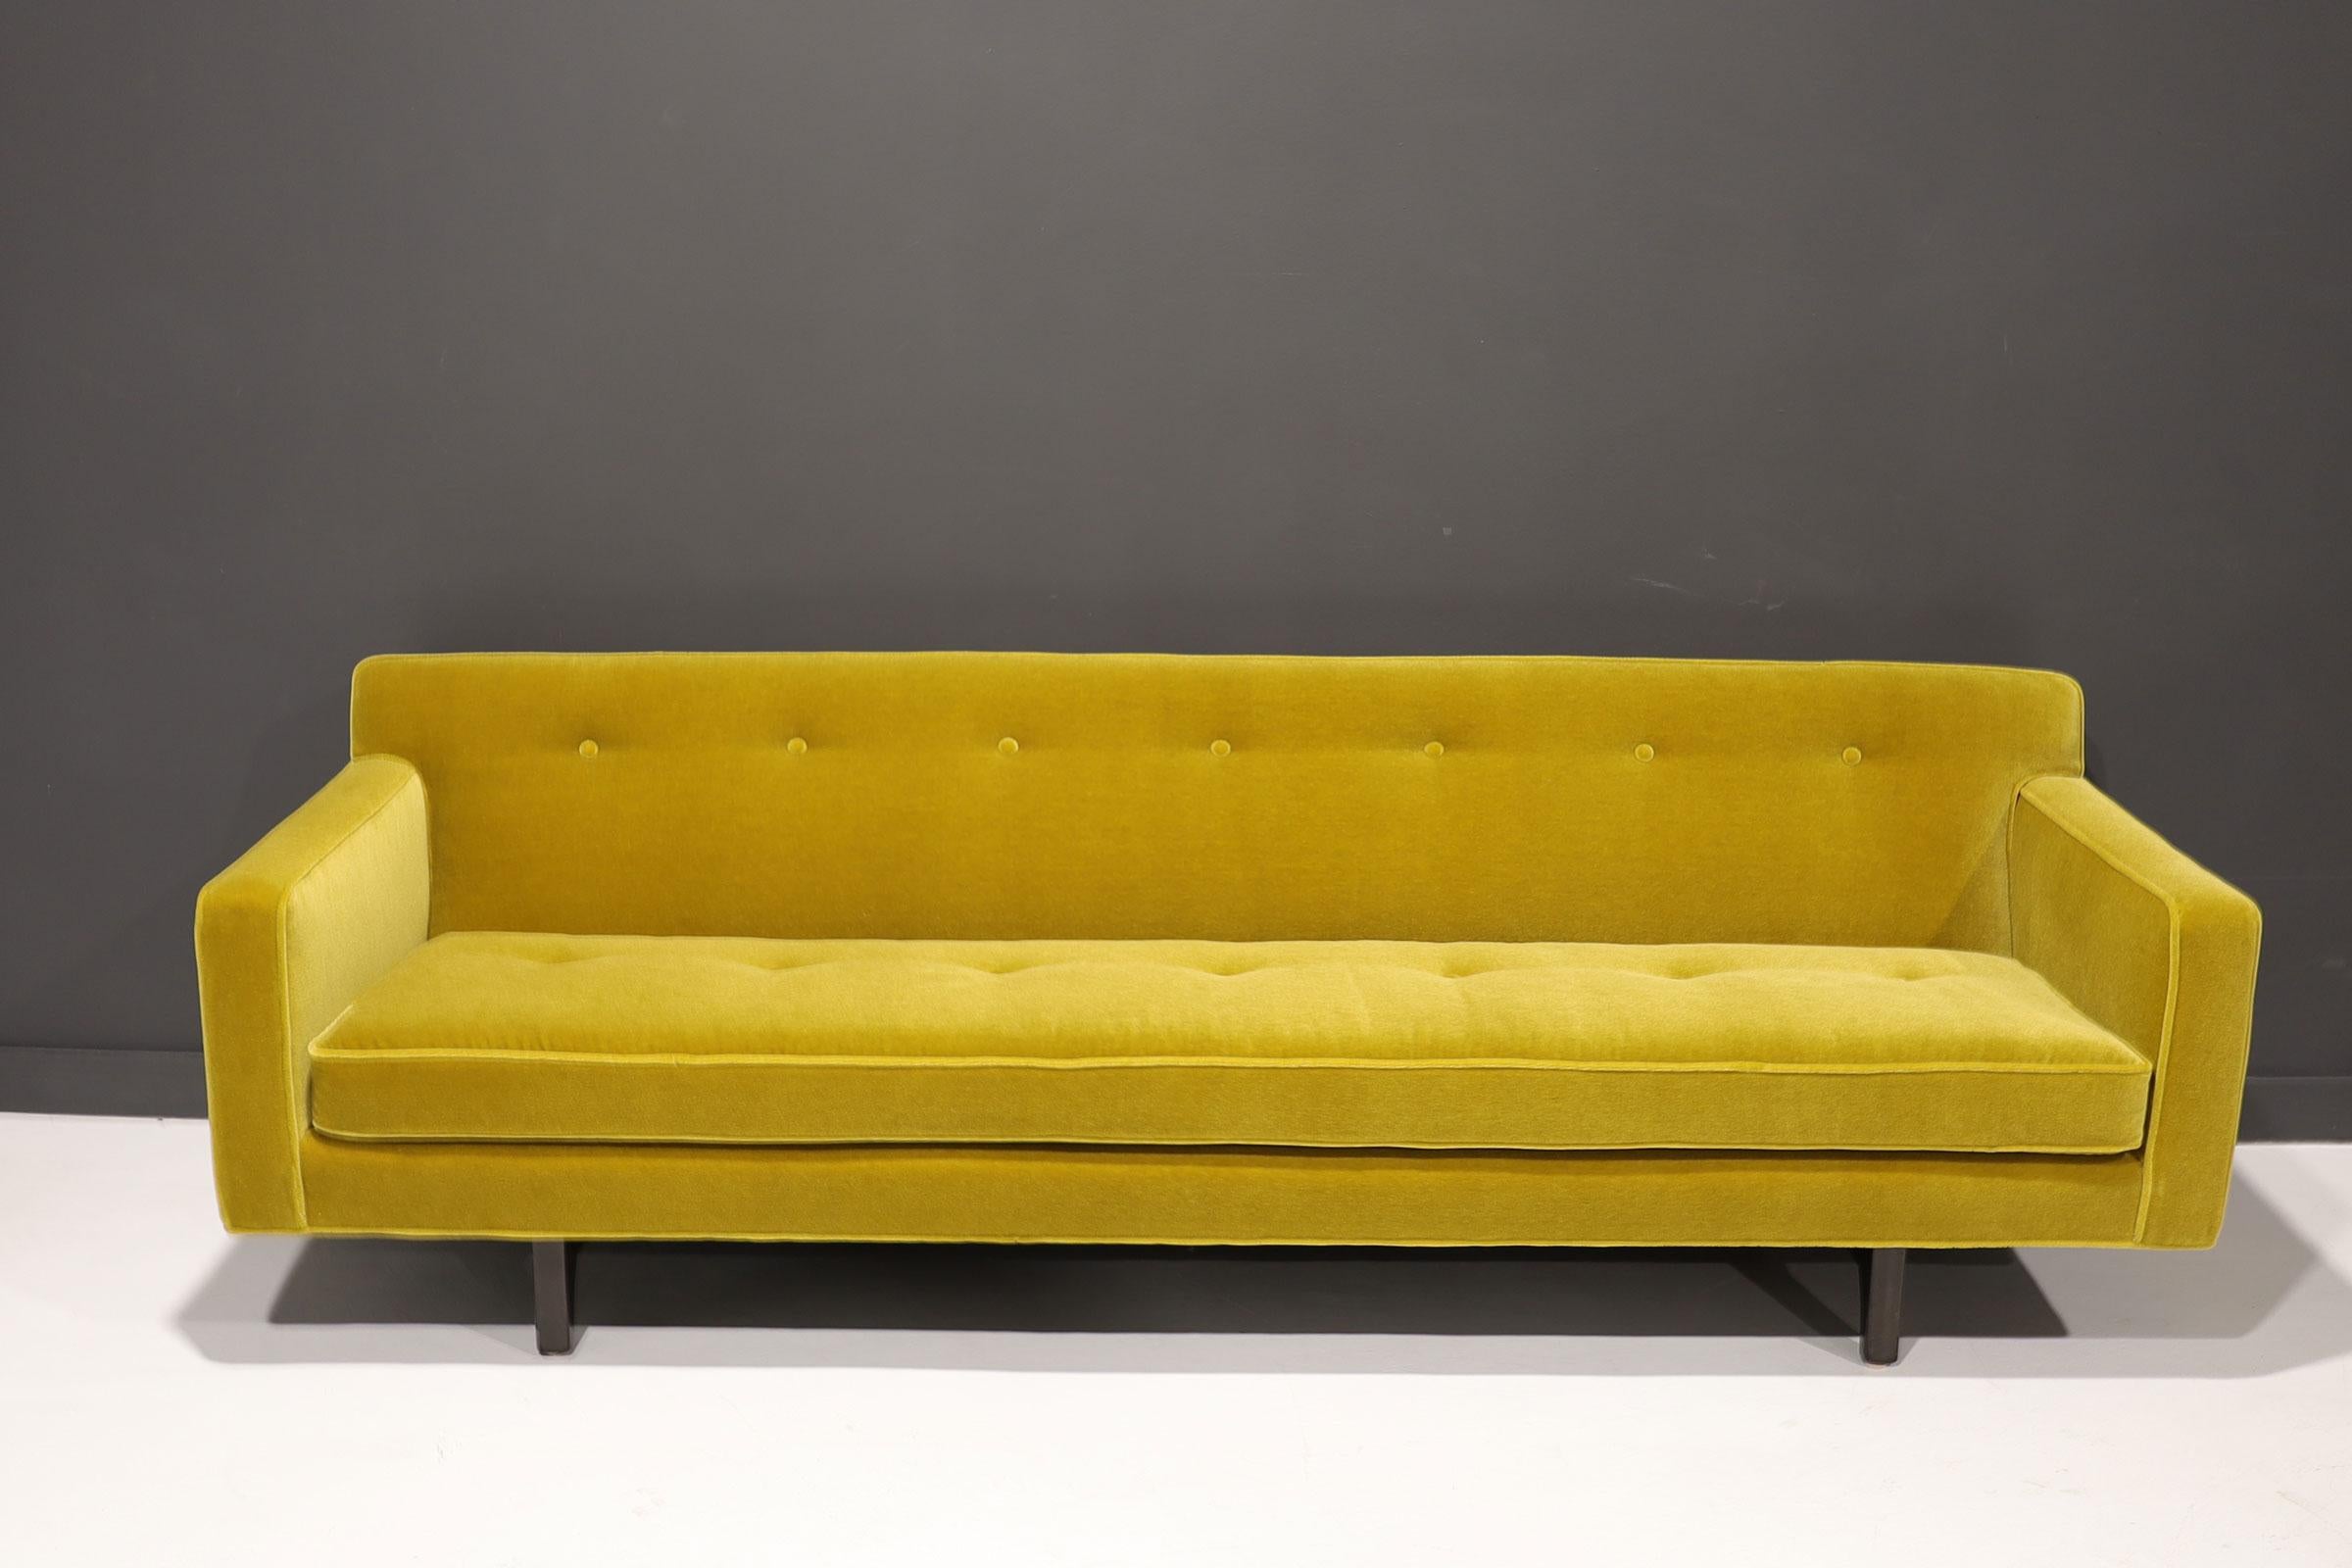 Wunderschön aktualisiert und restauriert. Das ikonische Sofa mit Bügelrücken von Edward Wormley für Dunbar. Es wurde mit einem wunderschönen, hochwertigen Mohair von 